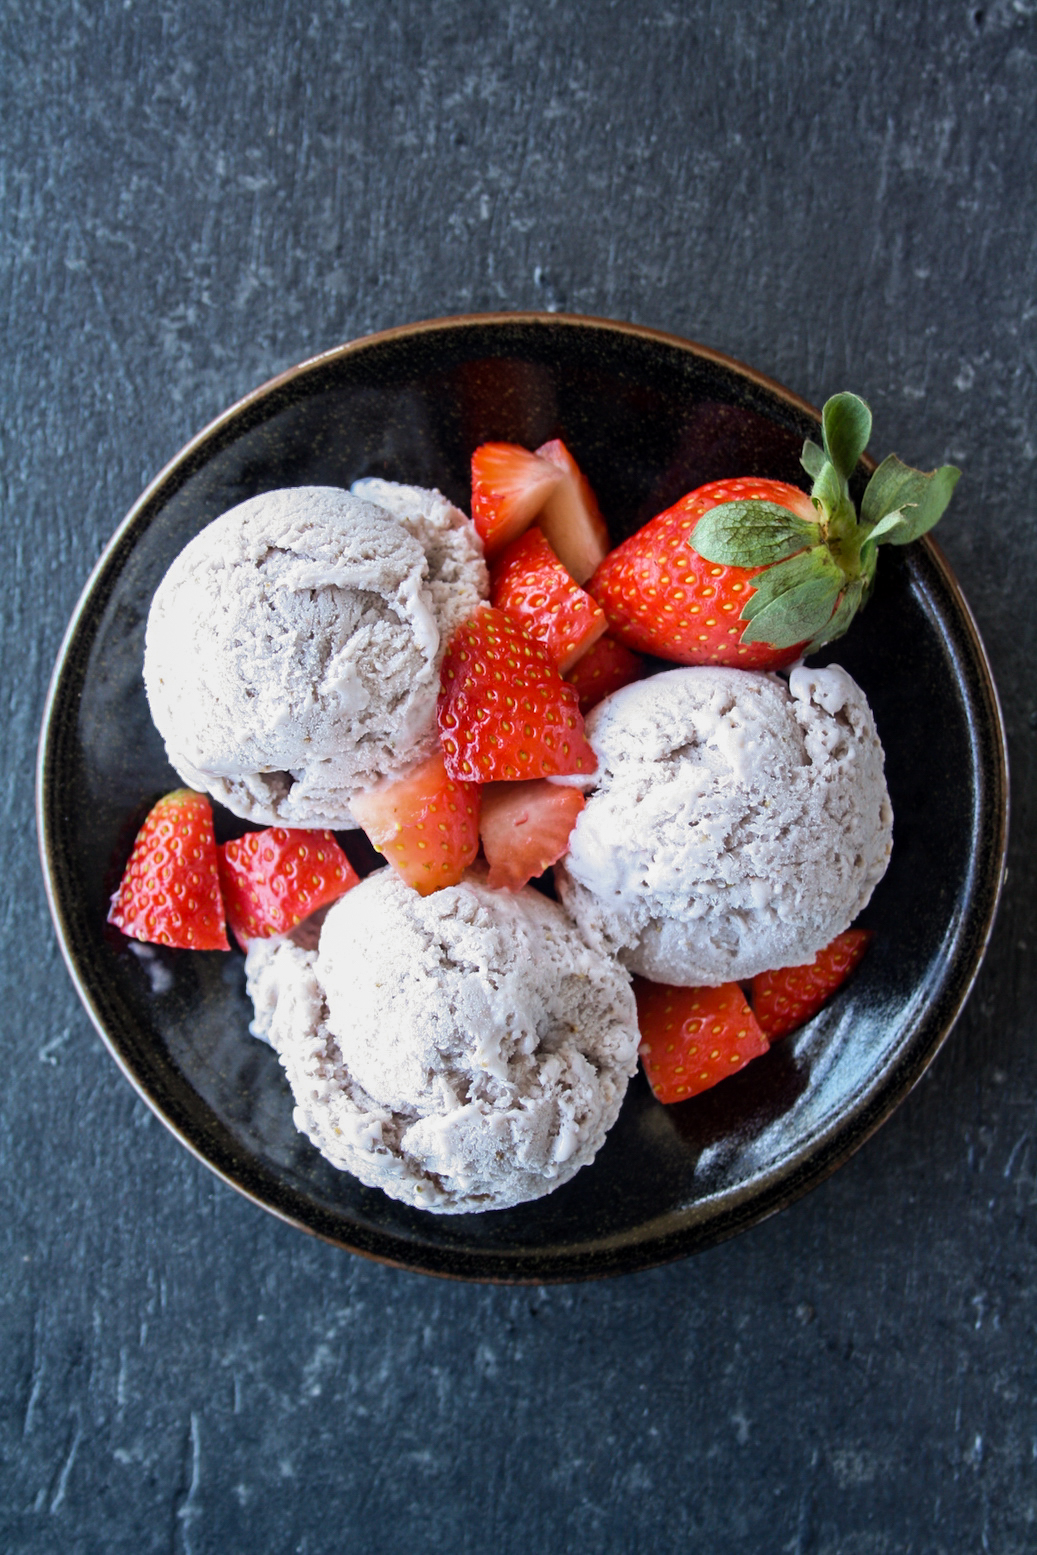 Strawberry Ice Cream Mix - True Scoops